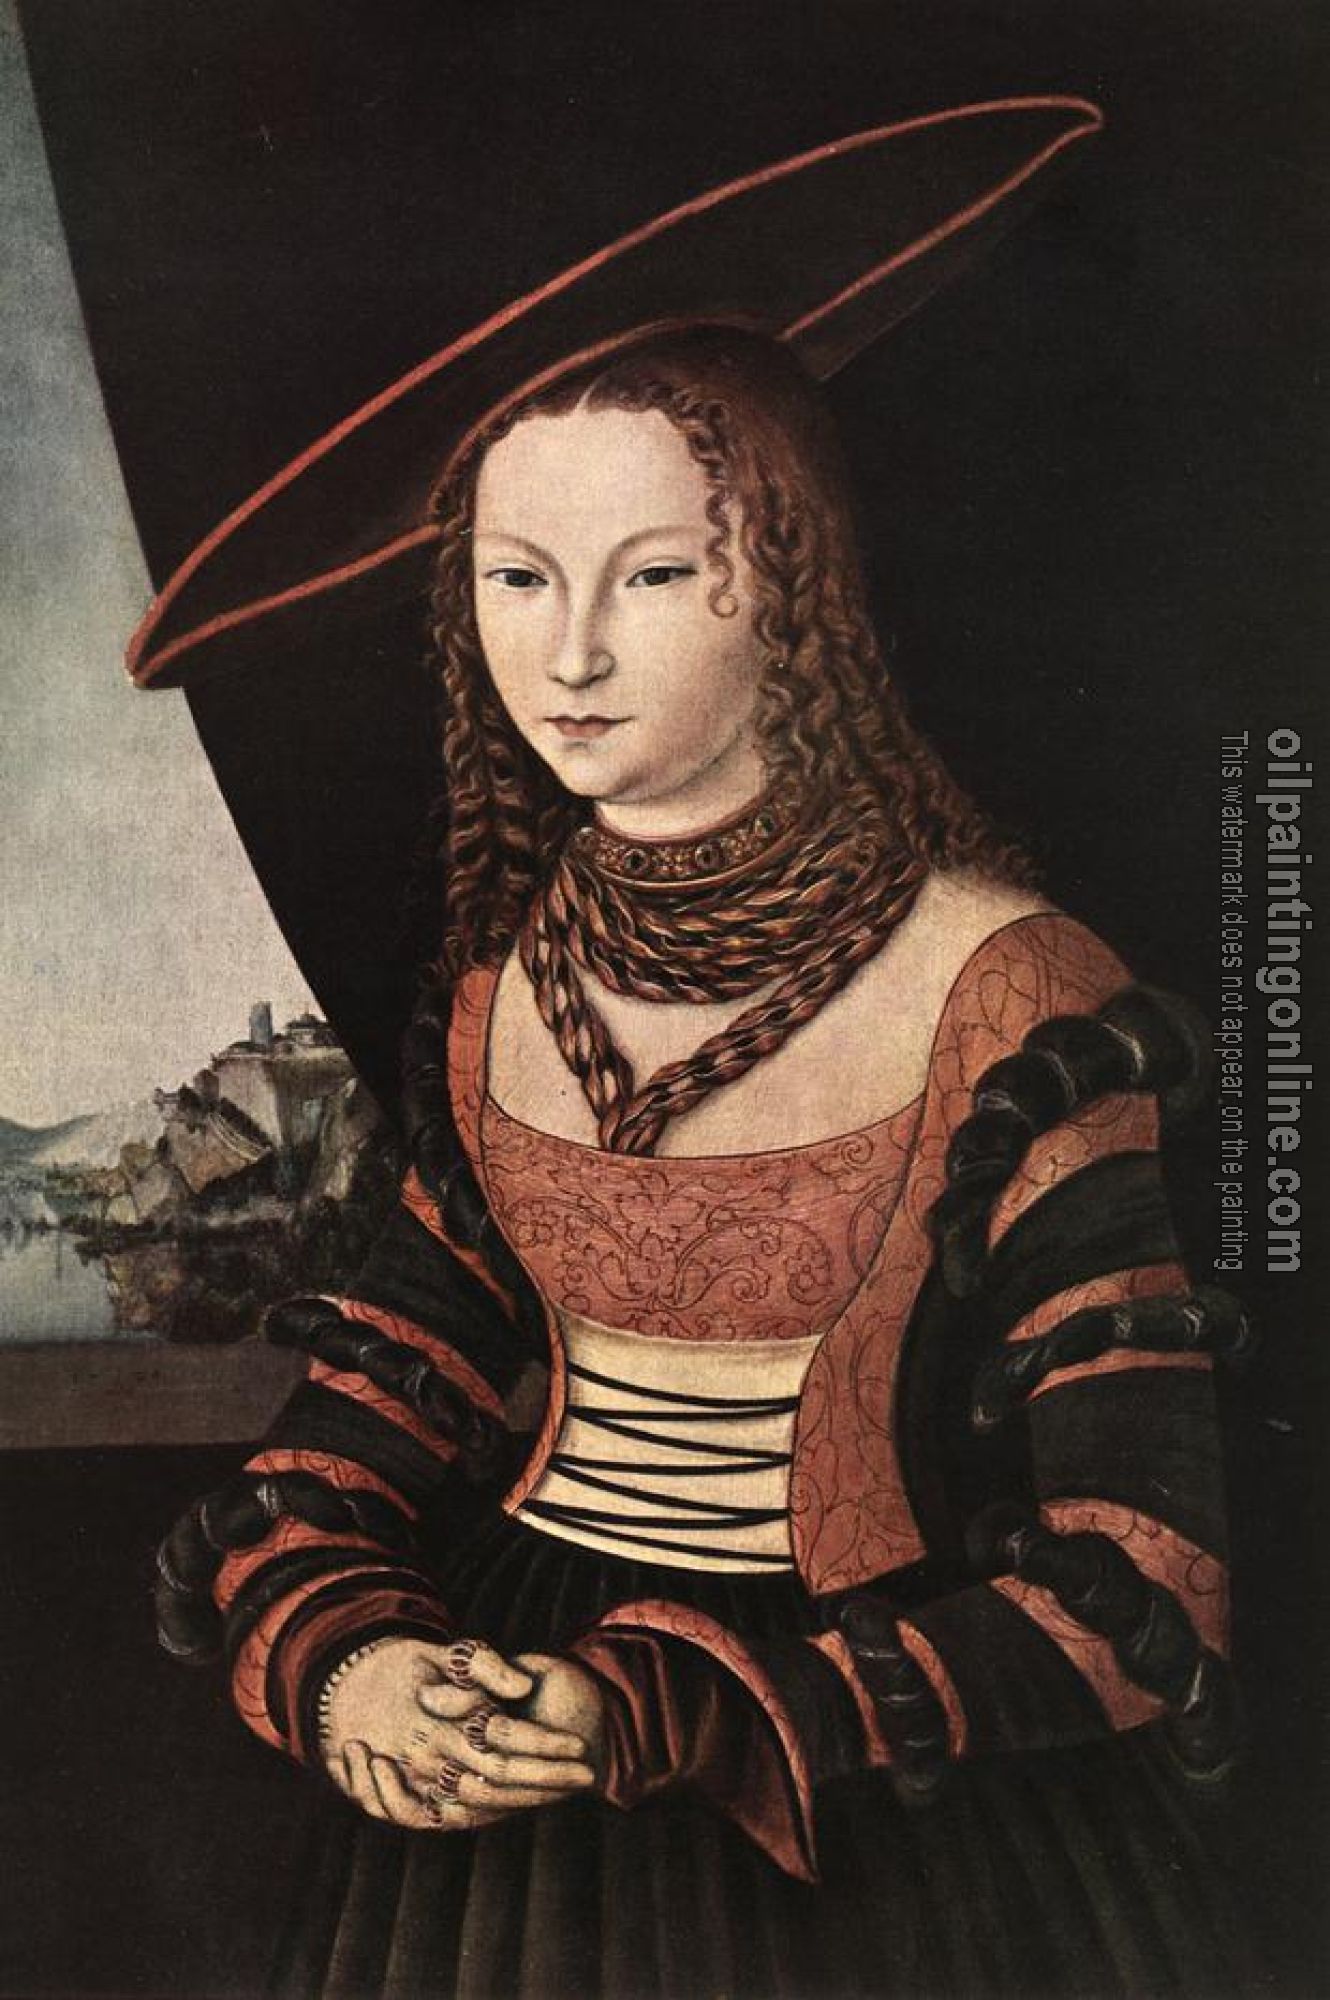 Lucas il Vecchio Cranach - Portrait of a Woman